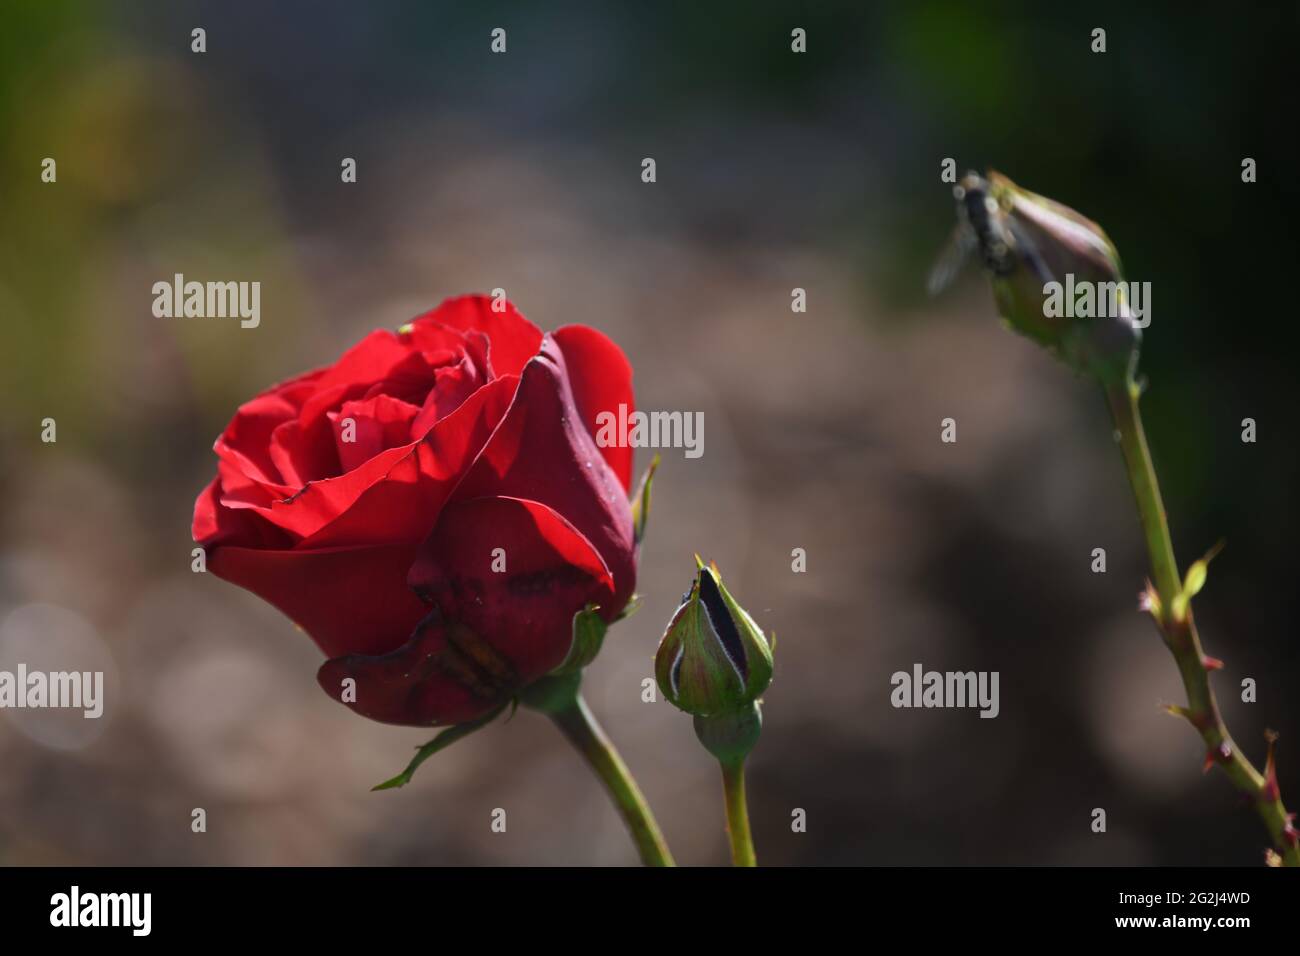 Heilpflanze Rose - rosa - mit herrlichem roter Rosenblüte als Zeichen der Liebe und Freundschaft - Grundstock der europäischen Gartenkultur, Heilpflon Stockfoto